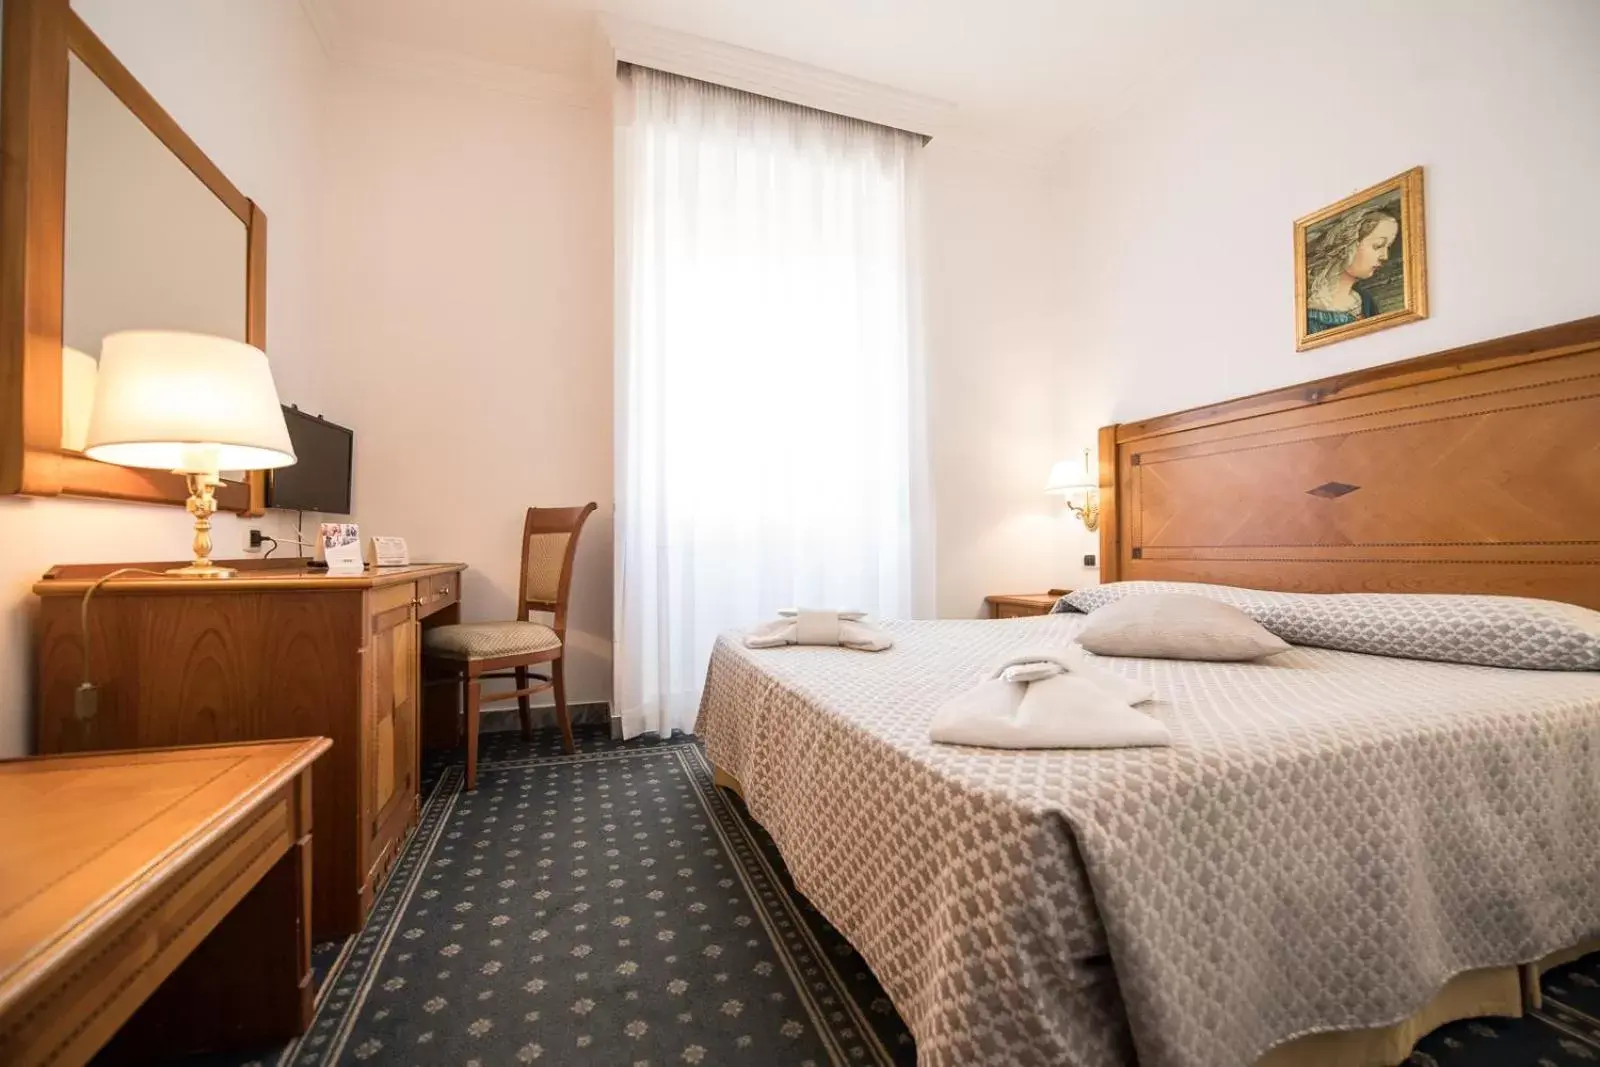 Bed in Quality Hotel Nova Domus